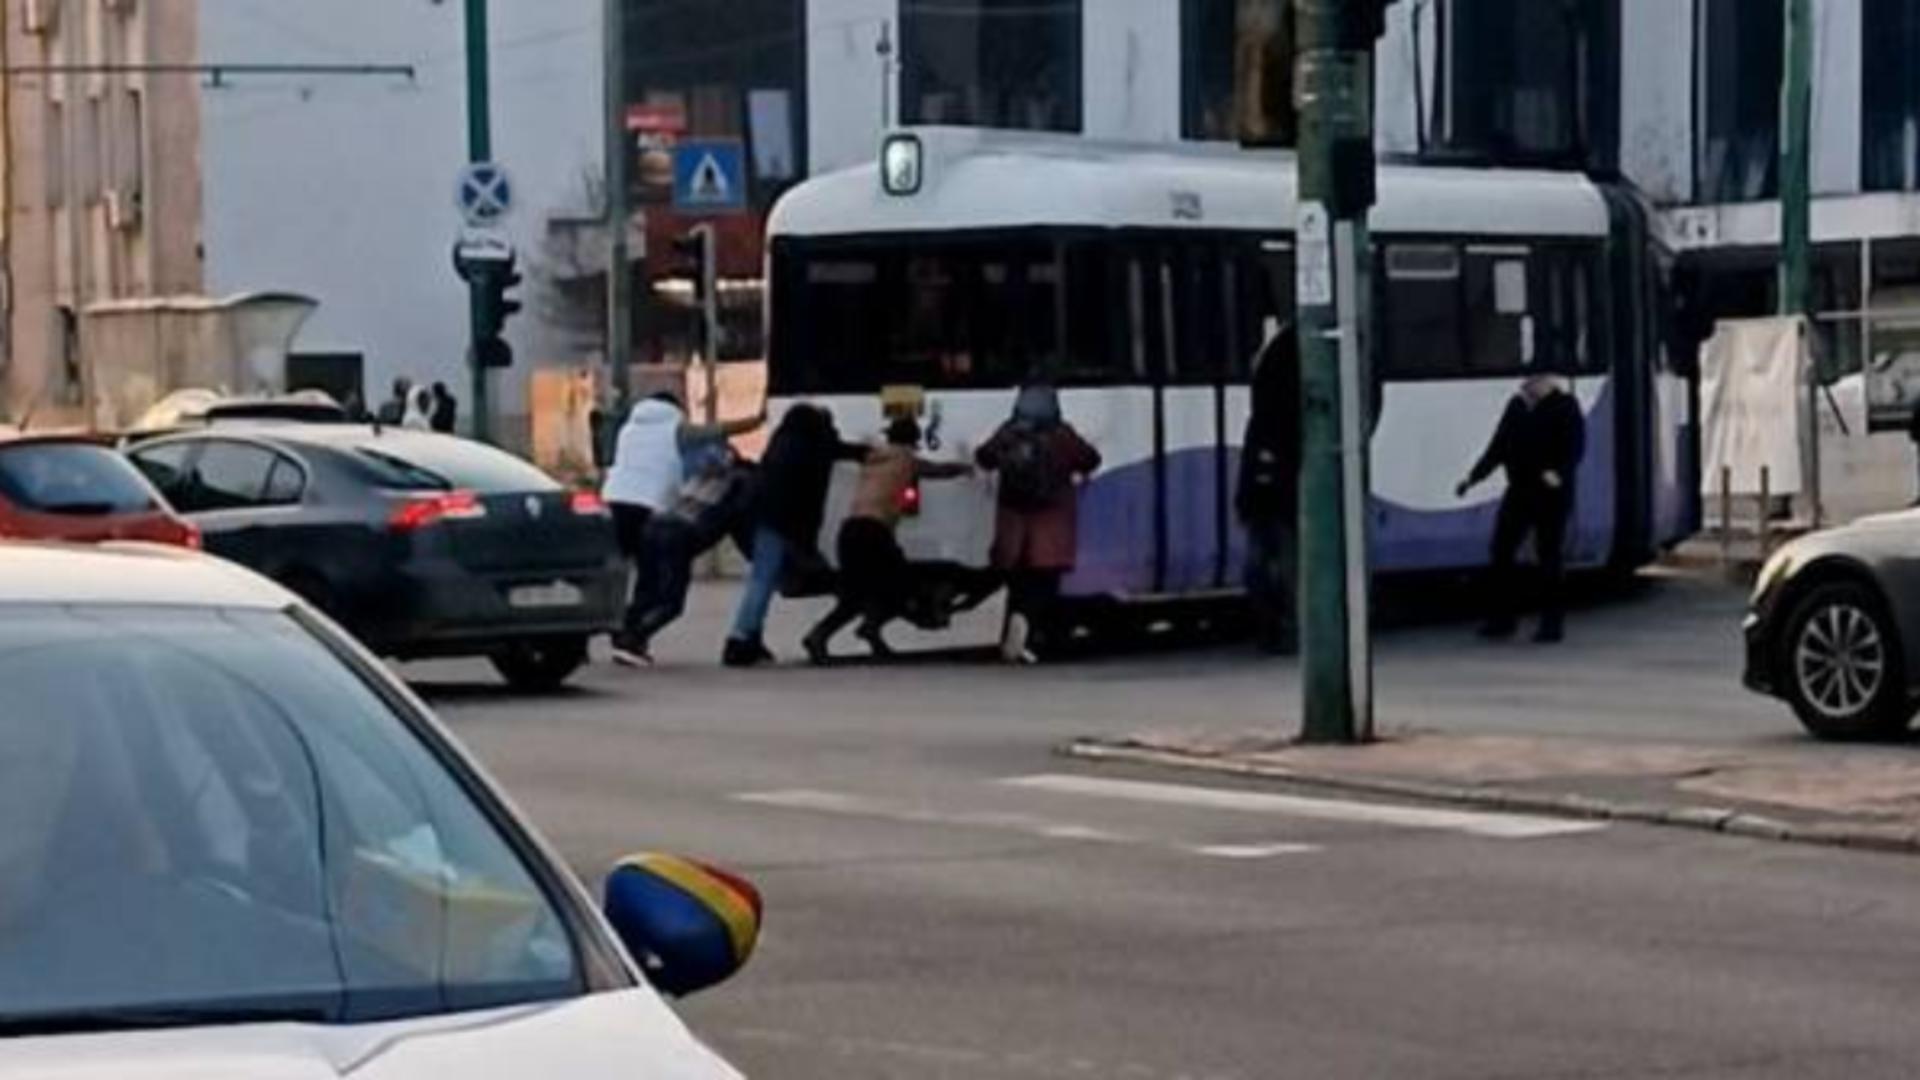 Tramvai împins de pasageri, după ce a rămas blocat pe șine. S-a întâmplat în capitala culturală europeană Timișoara – VIDEO